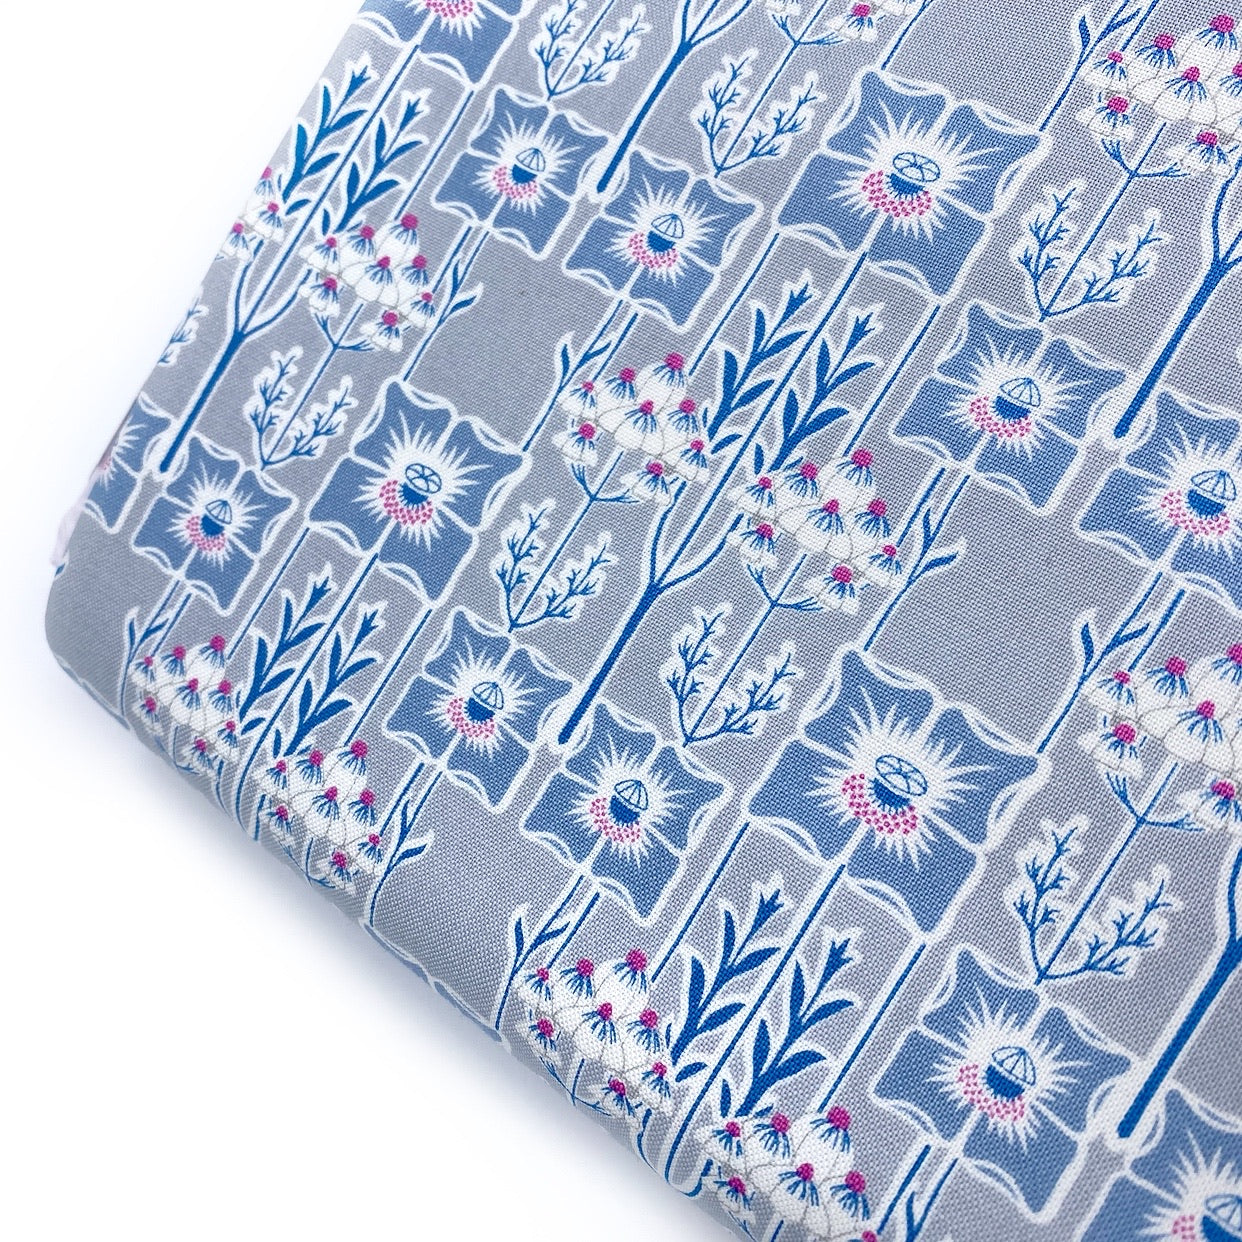 Nouveau Poppy- Deco Dance Liberty Cotton Fabric 04775915A